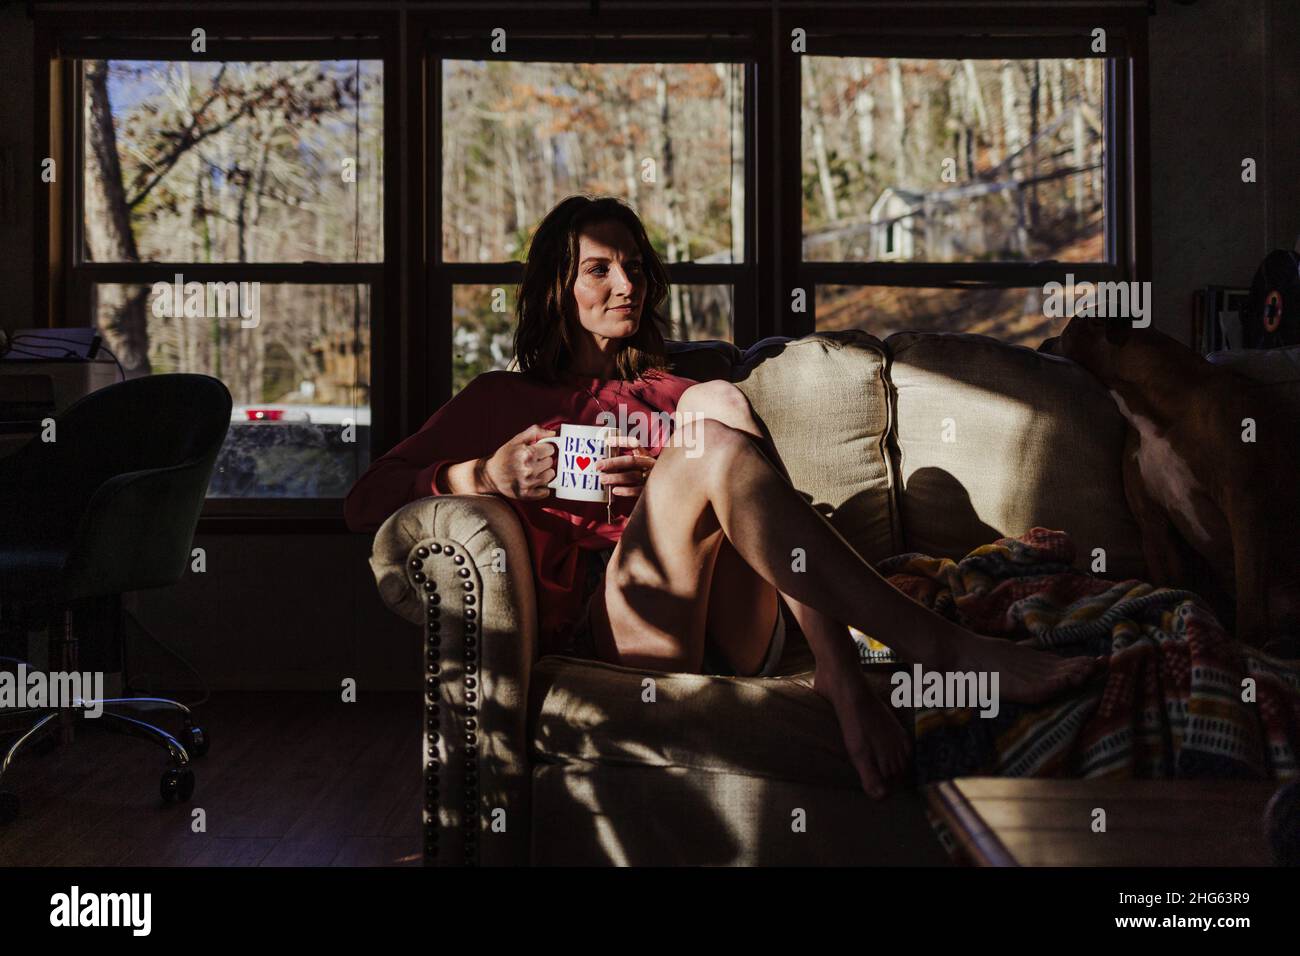 Une femme assise sur un canapé boit dans une tasse de café, meilleure maman. Banque D'Images